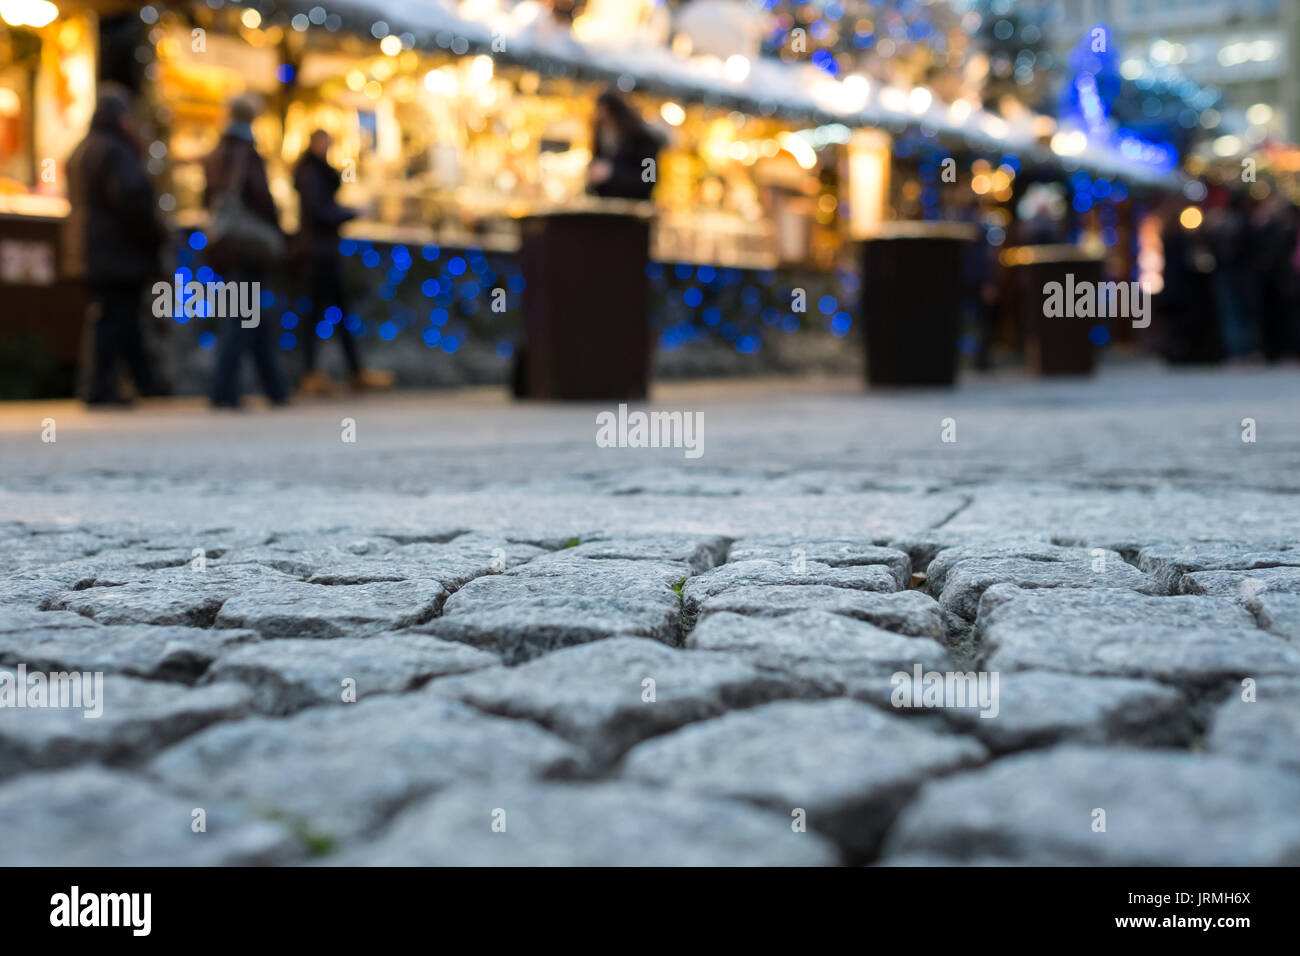 Ciottoli in un tedesco mercatino di Natale in inverno Foto Stock